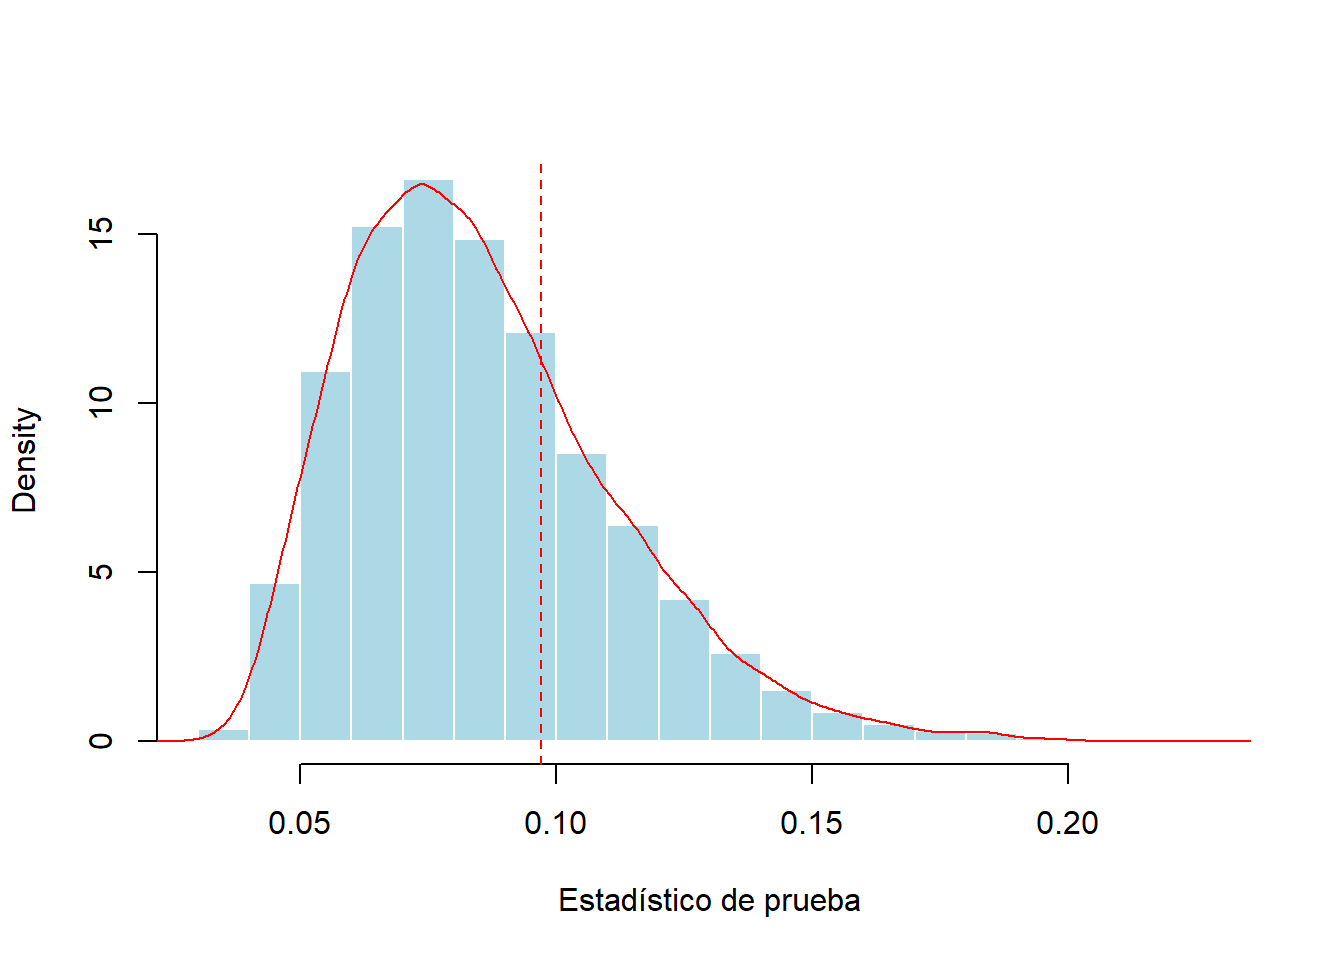 Distribución simulada del estadístico de prueba de Kolmogorov-Smirnov. La línea roja discontinua vertical marca el estadístico de prueba para una muestra de 100.